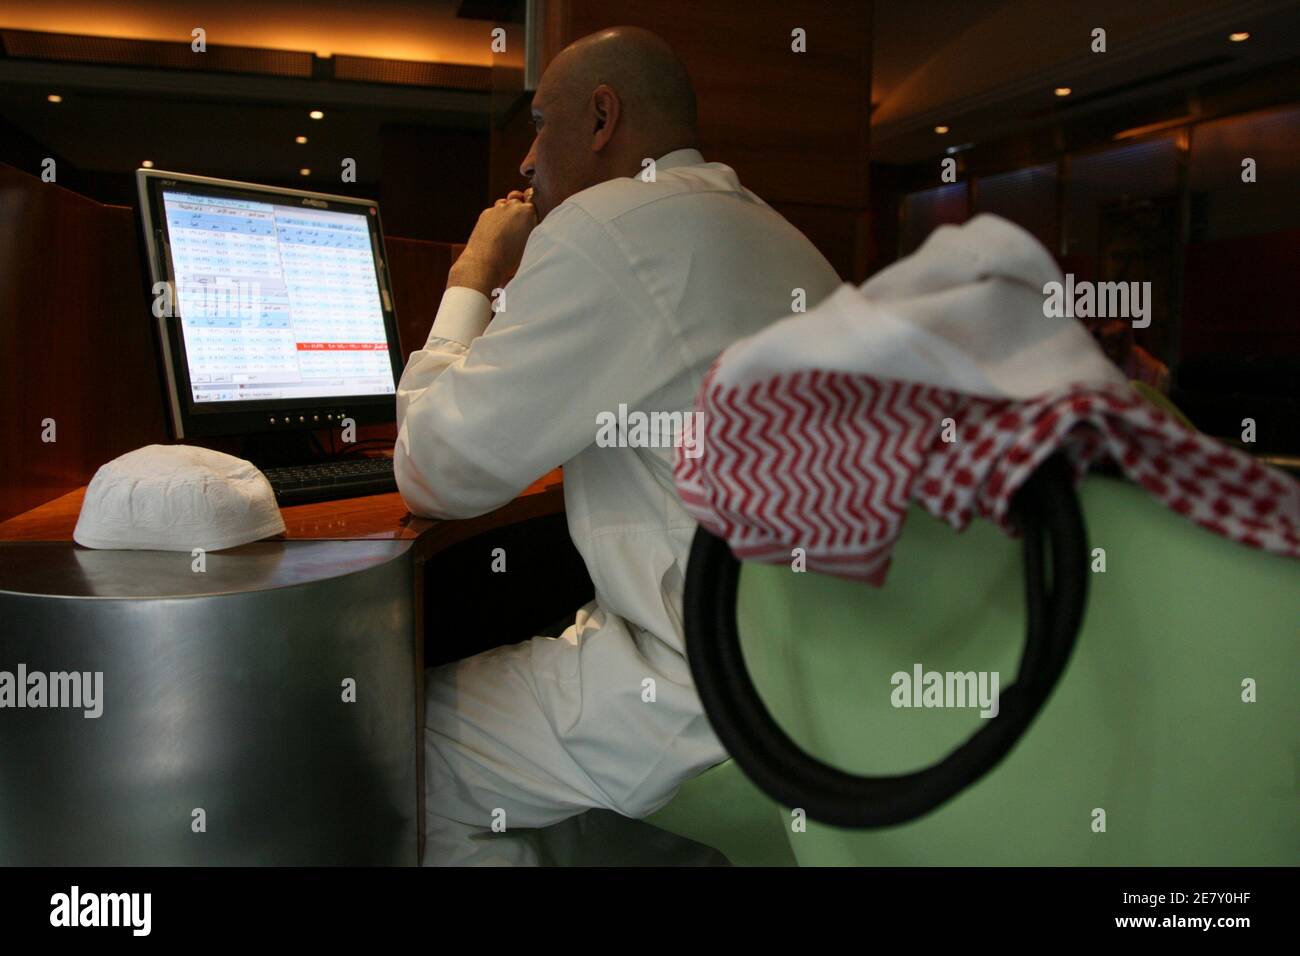 Ein saudischer Händler arbeitet bei der Saudi Investment Bank in Riad am 18. März 2008. Die saudischen Behörden hofften, dass die Förderung der Massenbeteiligung an Aktienbesitz dazu beitragen würde, den Reichtum aus dem aktuellen Ölboom zu verteilen, wenn die Weltmarktpreise steigen. Doch ein Börsencrash im Jahr 2006 und die steigende Inflation in den letzten Monaten haben bei den gewöhnlichen Saudis eine düstere Atmosphäre verbreitet. REUTERS/Fahad Shadeed (SAUDI-ARABIEN) Stockfoto